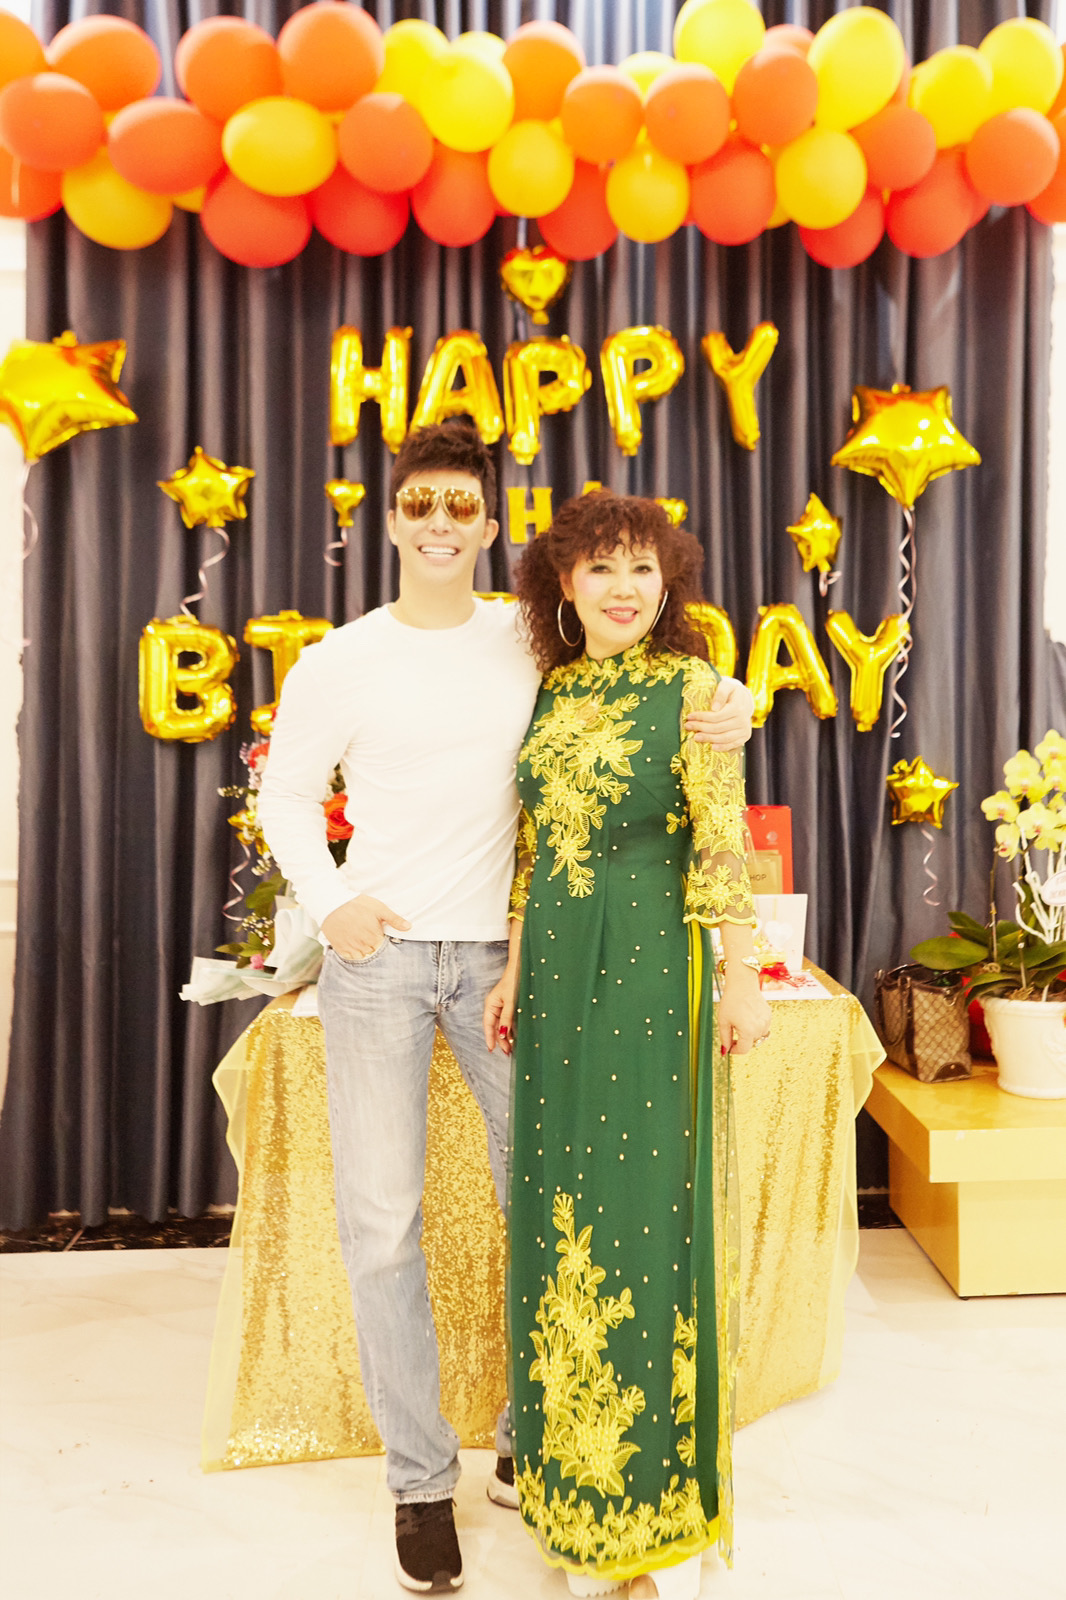 Nathan Lee tổ chức sinh nhật cho mẹ tại biệt thự 600 tỷ đồng